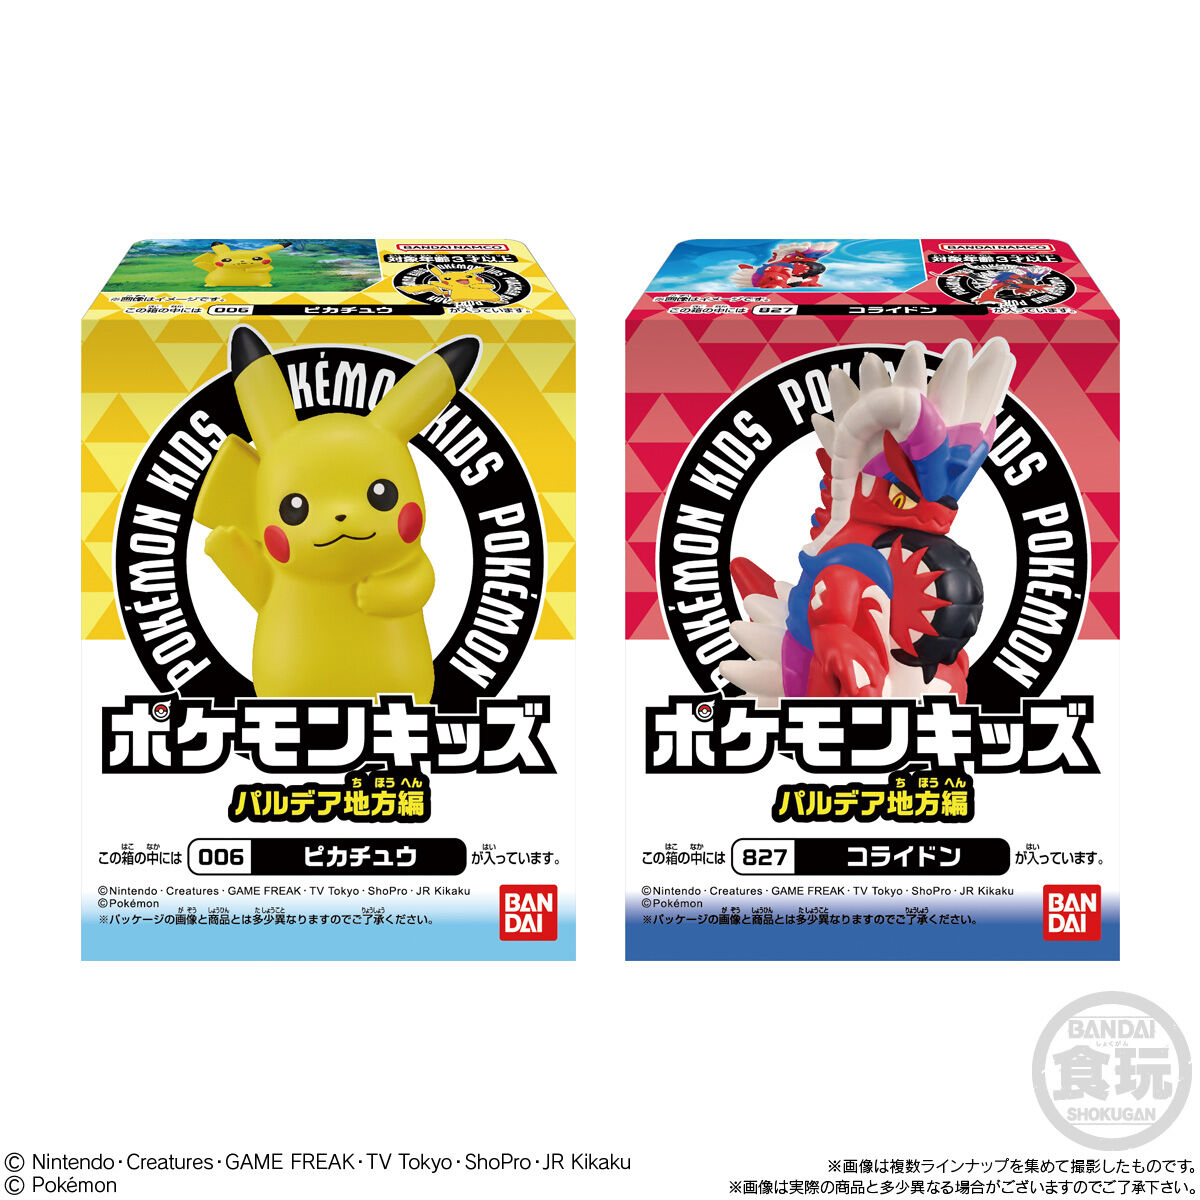 【周边】bandai万代 pokemon宝可梦扭蛋盲盒全15种随机发 帕底亚地方篇 - U5JAPAN.COM